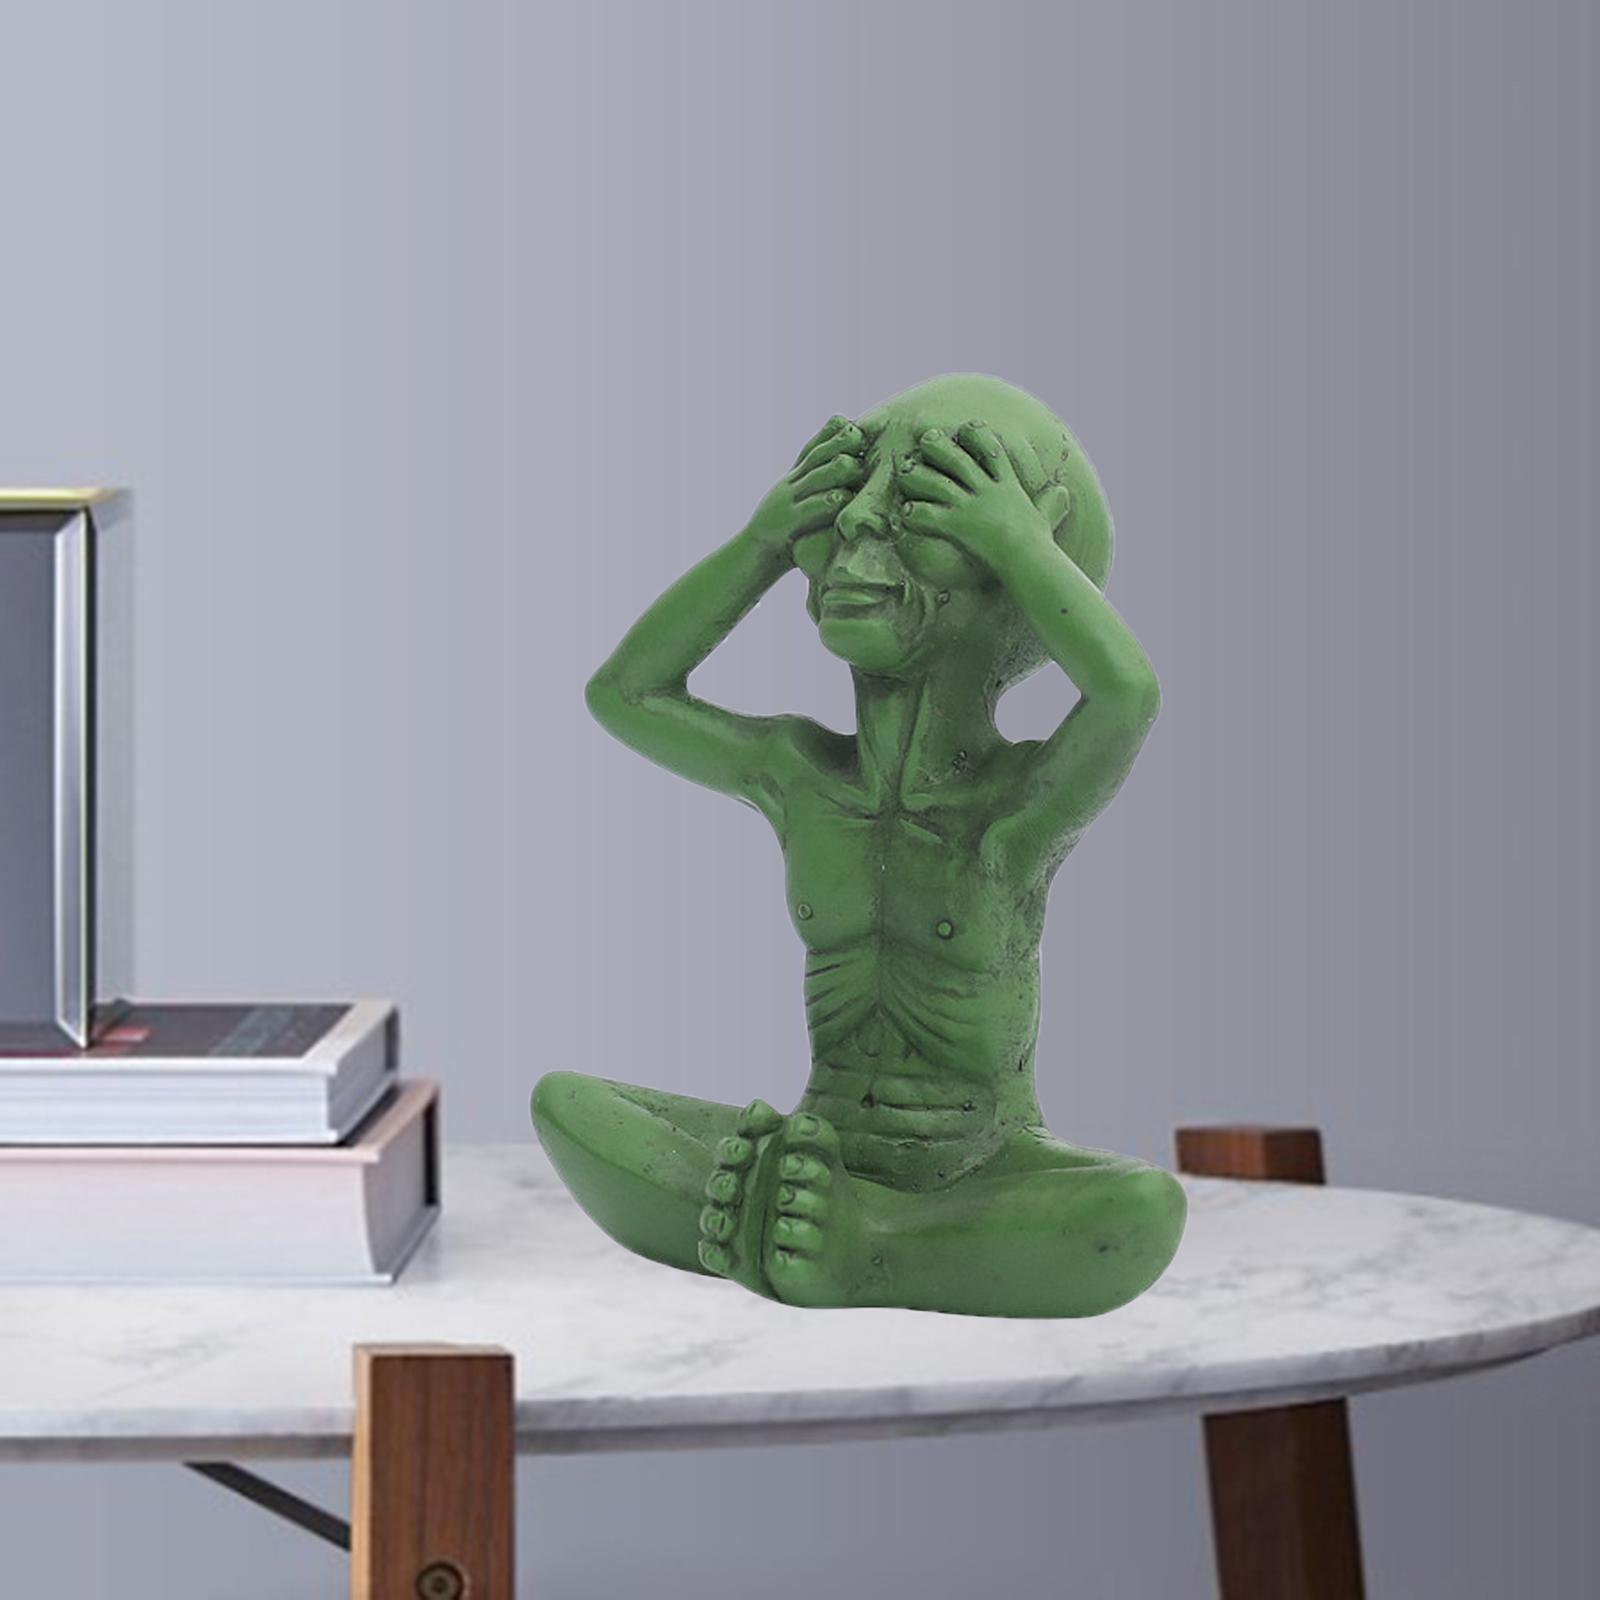 Resin Alien Statue Desktop Sculptures Figurine Ornament Art Decor Green A